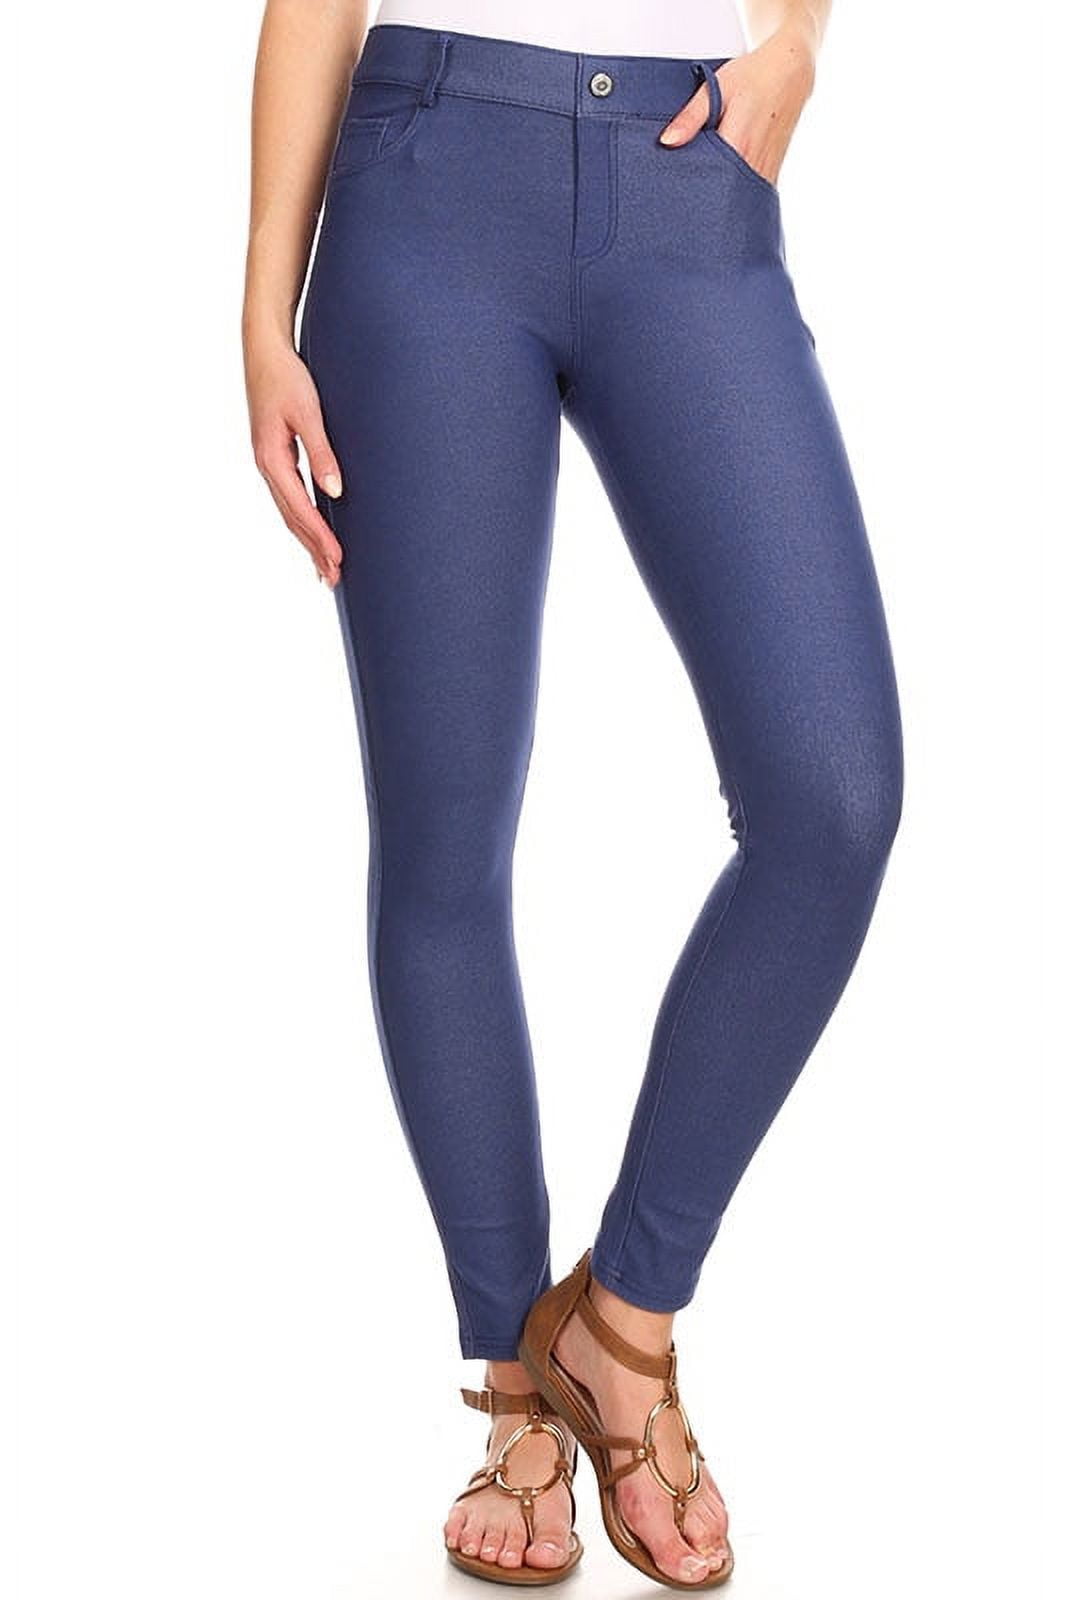 New Ladies Women's Stretchy Pants Denim Jeans Skinny Look Jeggings Leggings  8-24